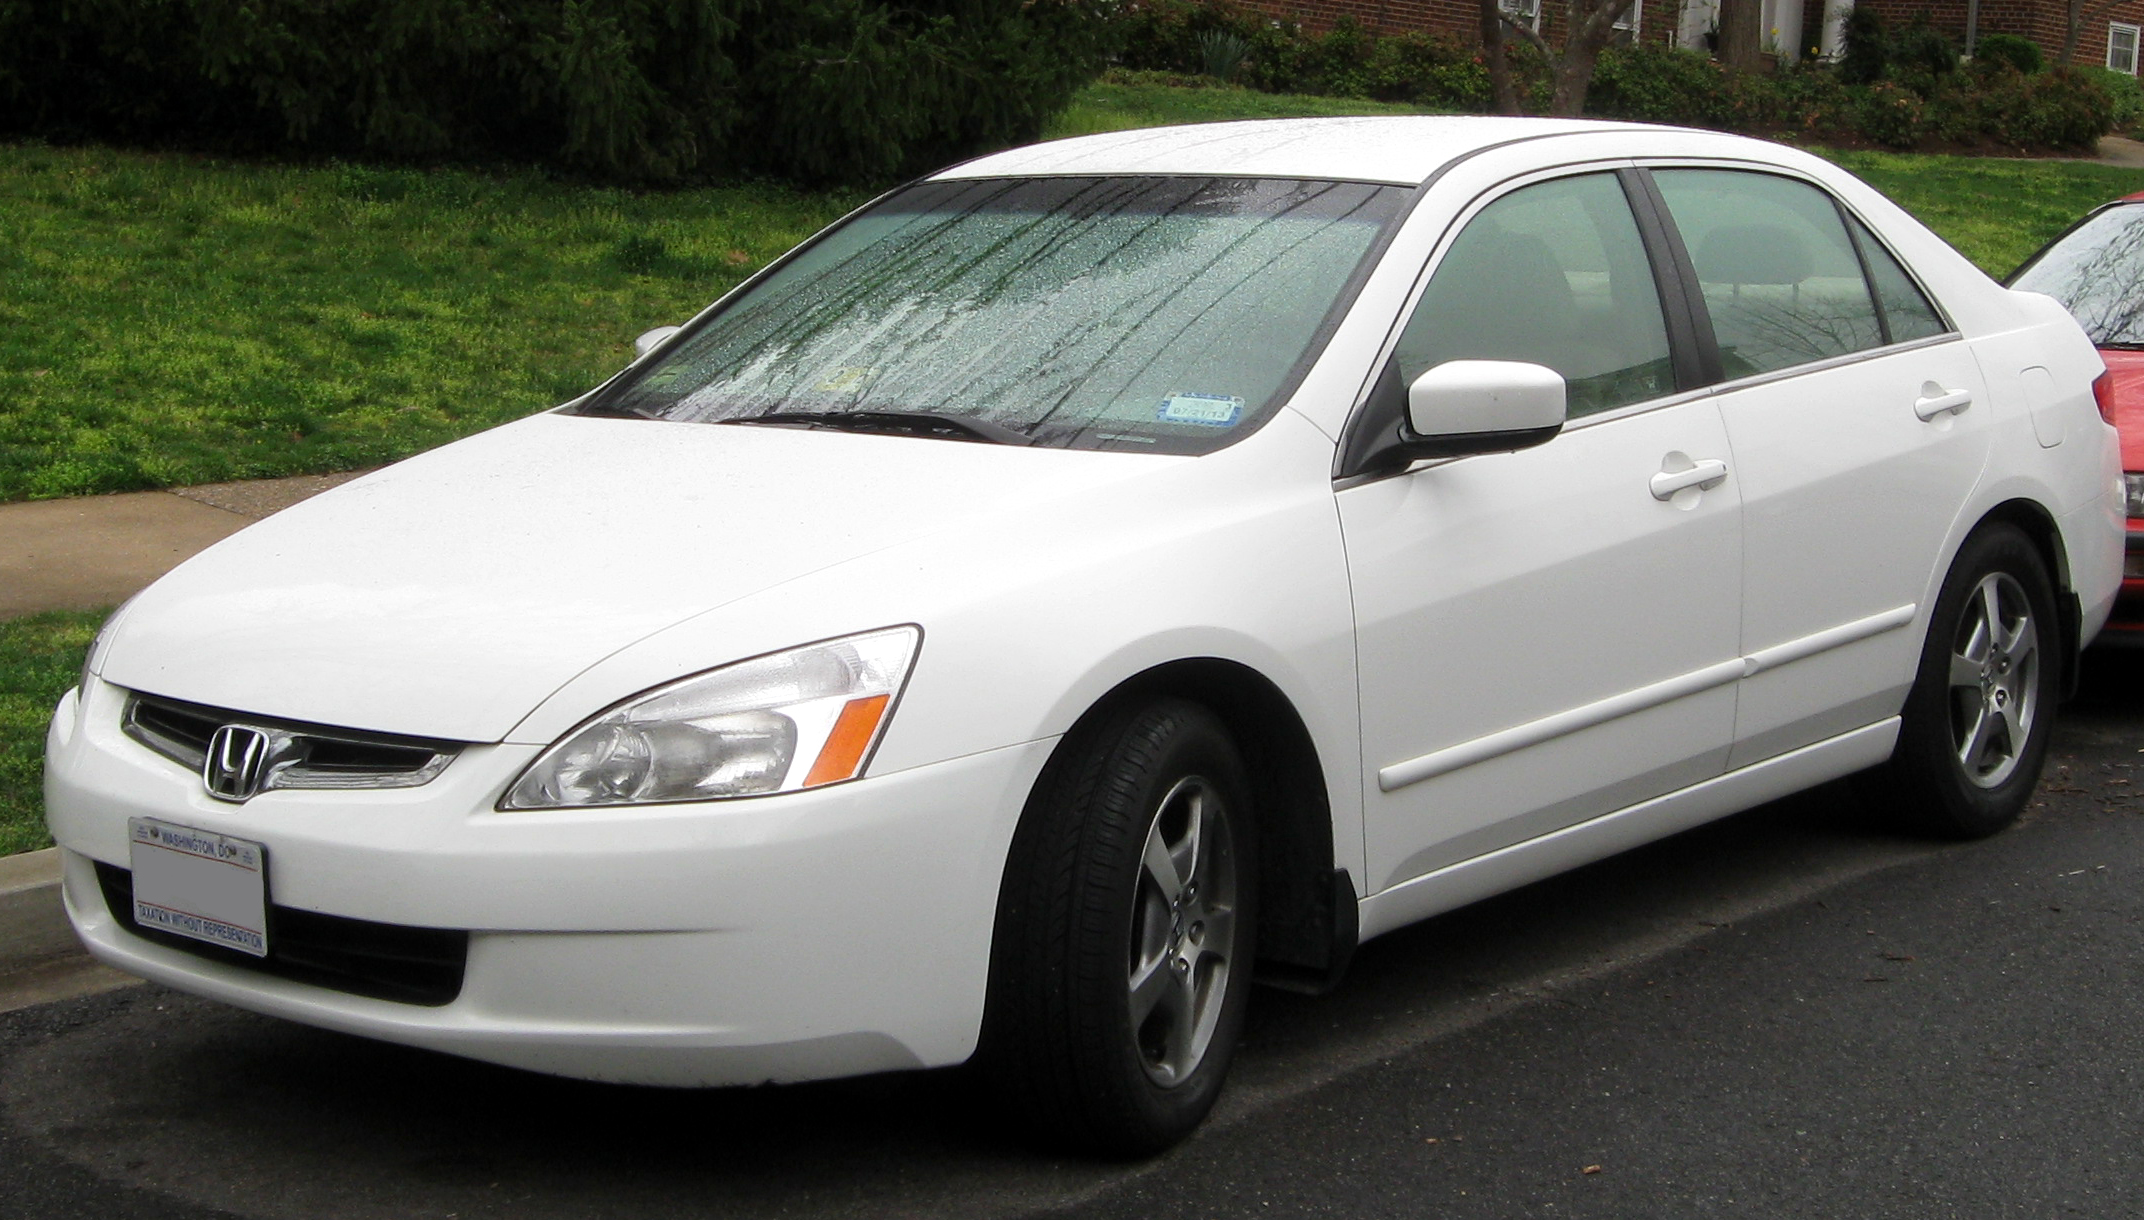 File:2005 Honda Accord Hybrid -- 03-21-2012 2.JPG - Wikimedia Commons